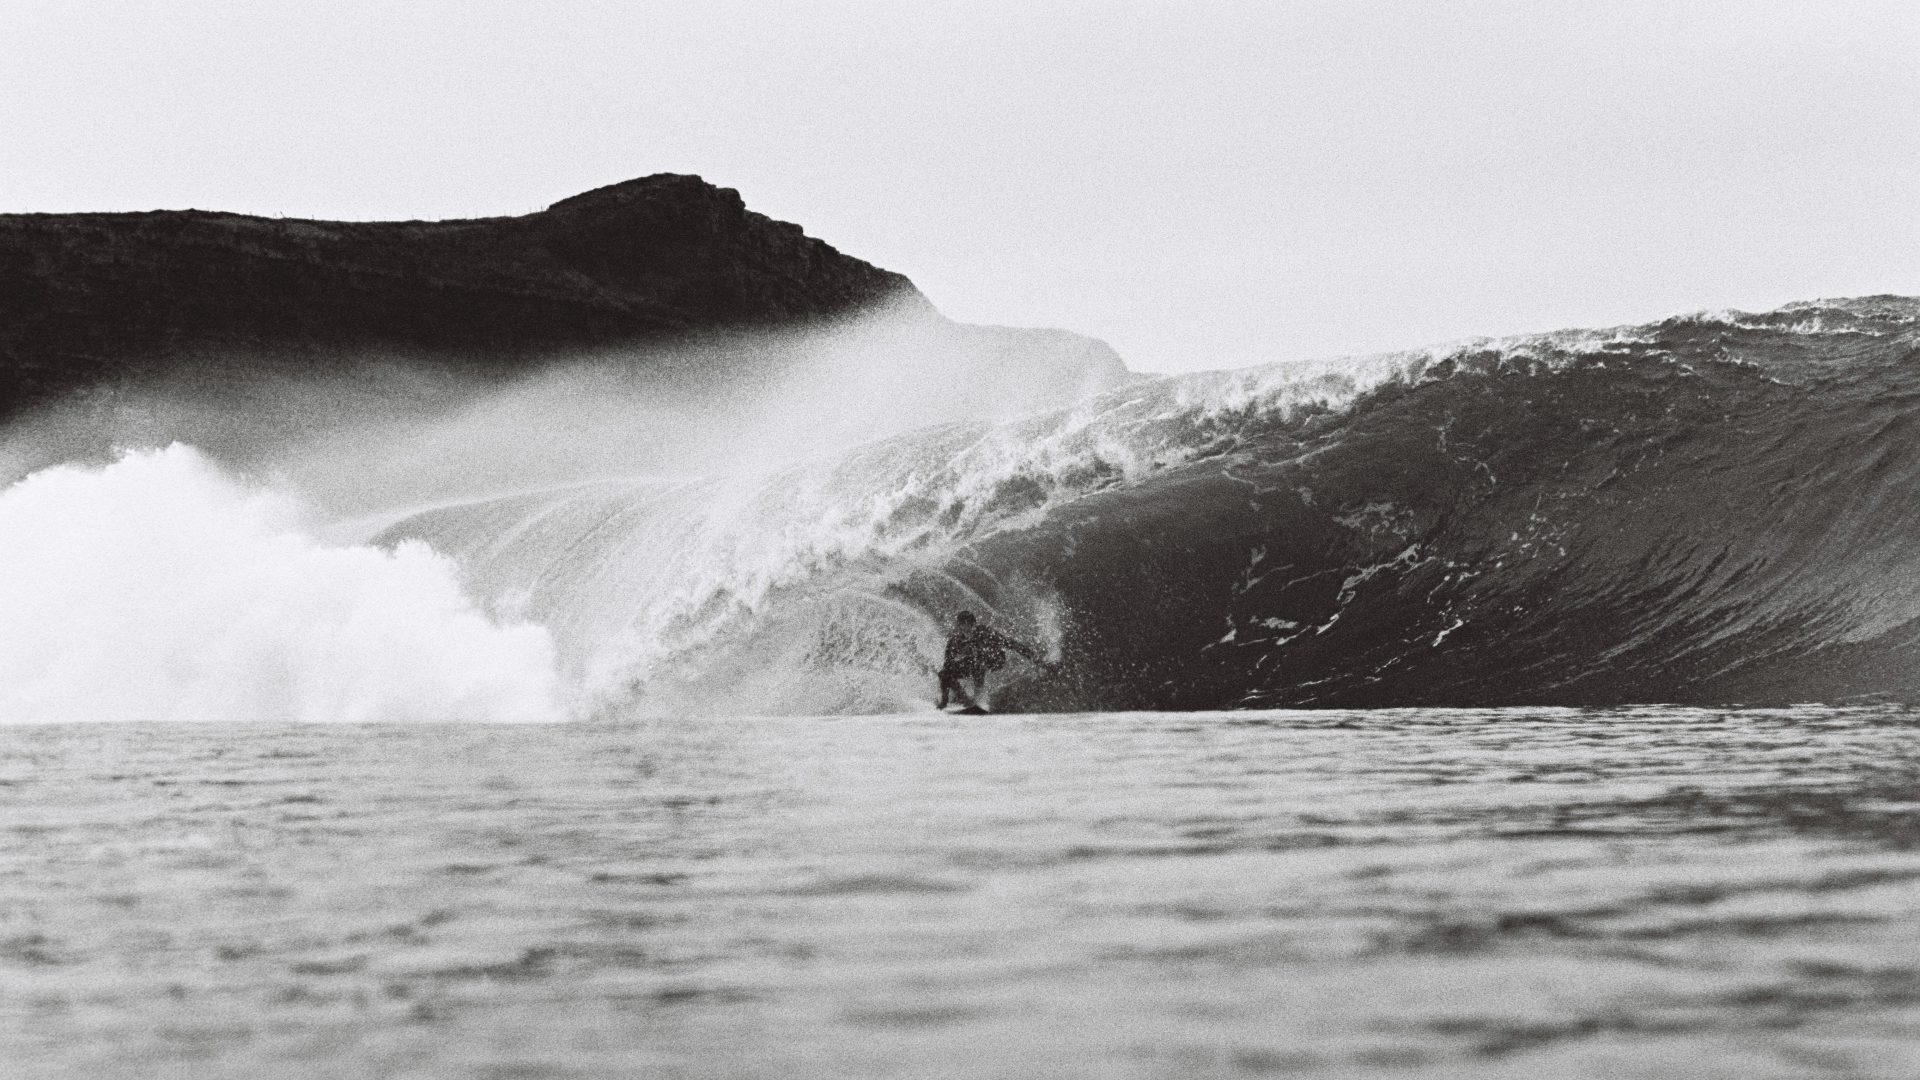 Derw Fineron Surf Photographer